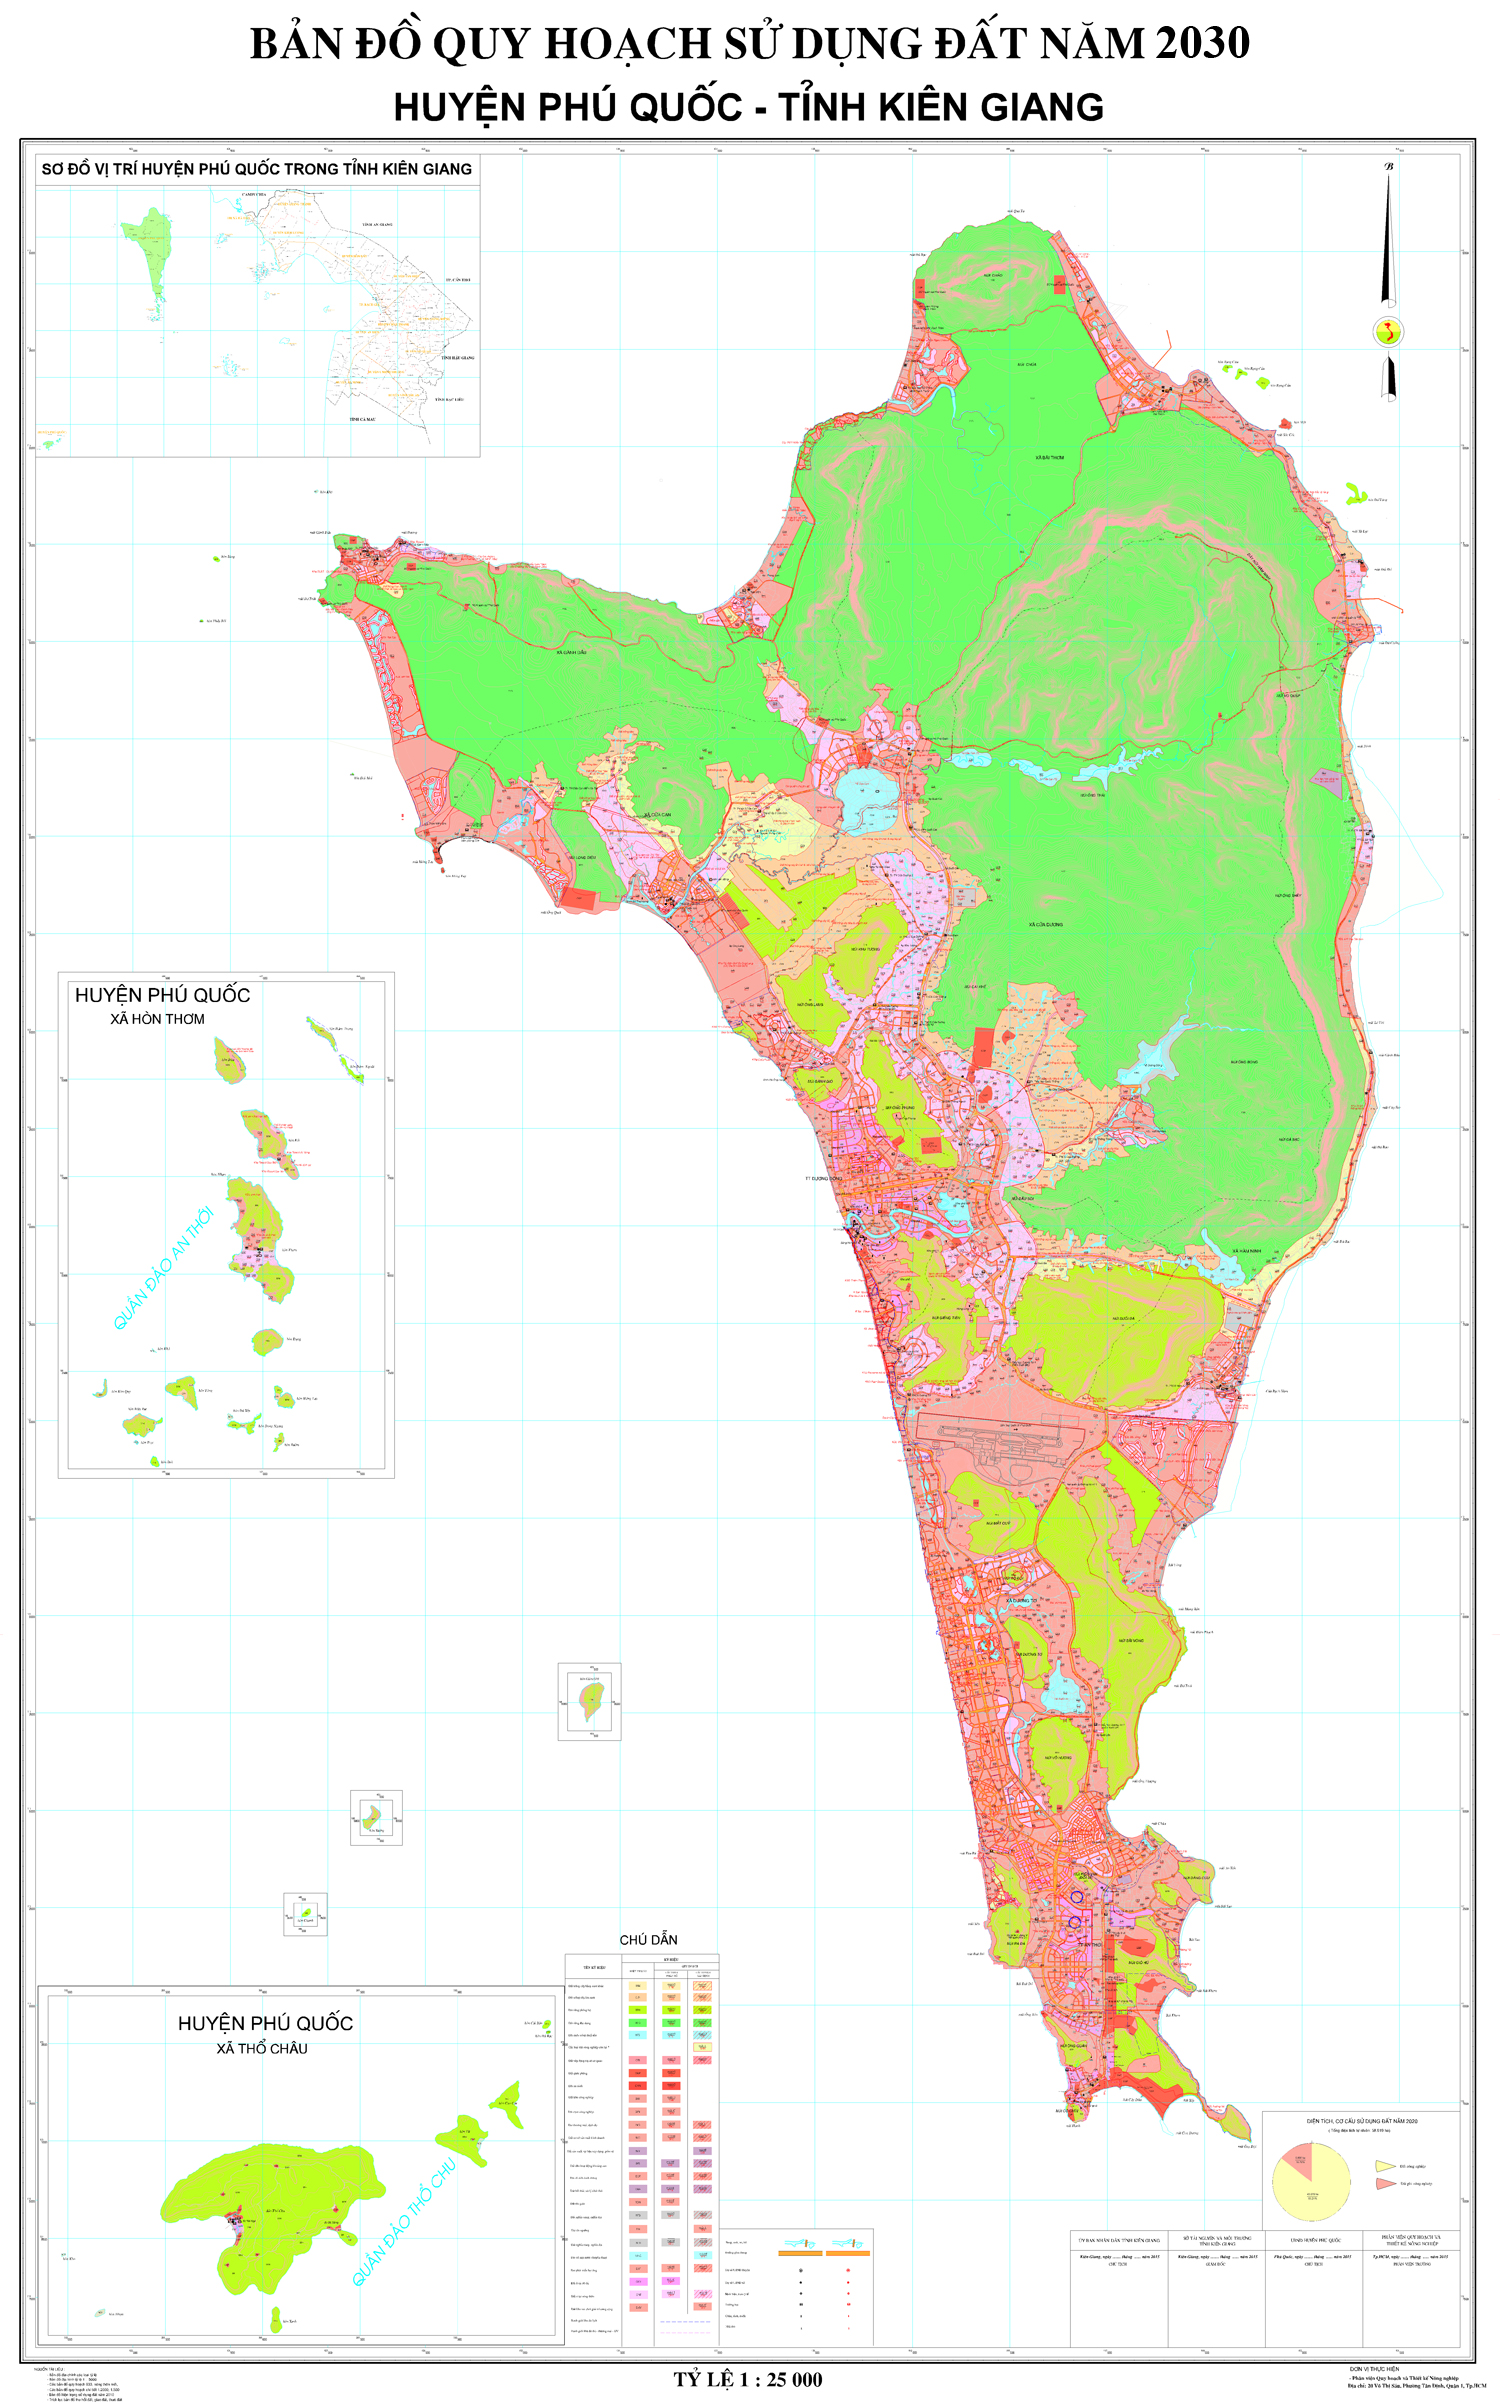 Với định hướng quy hoạch đất Phú Quốc đến năm 2030, đảo sẽ trở thành một điểm đến hàng đầu tại khu vực Đông Nam Á. Hãy xem hình ảnh để thấy những kế hoạch đầy tham vọng này.